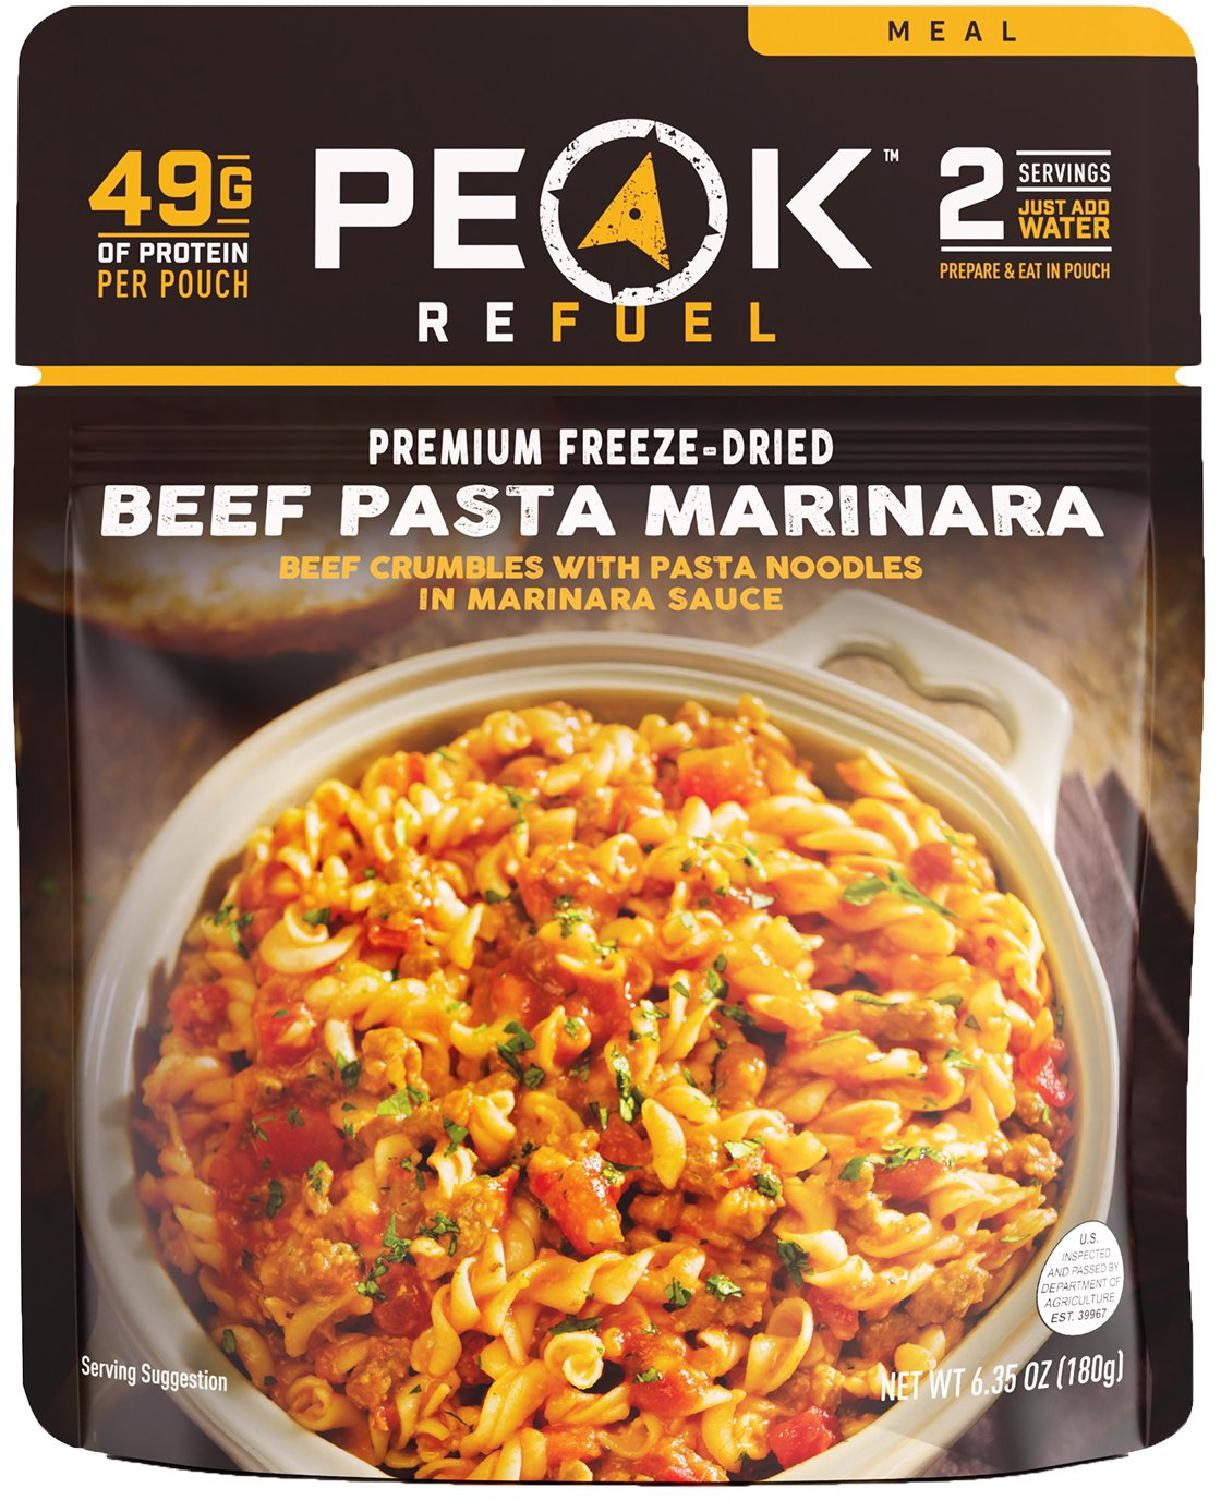 Паста Маринара с говядиной – 2 порции PEAK REFUEL